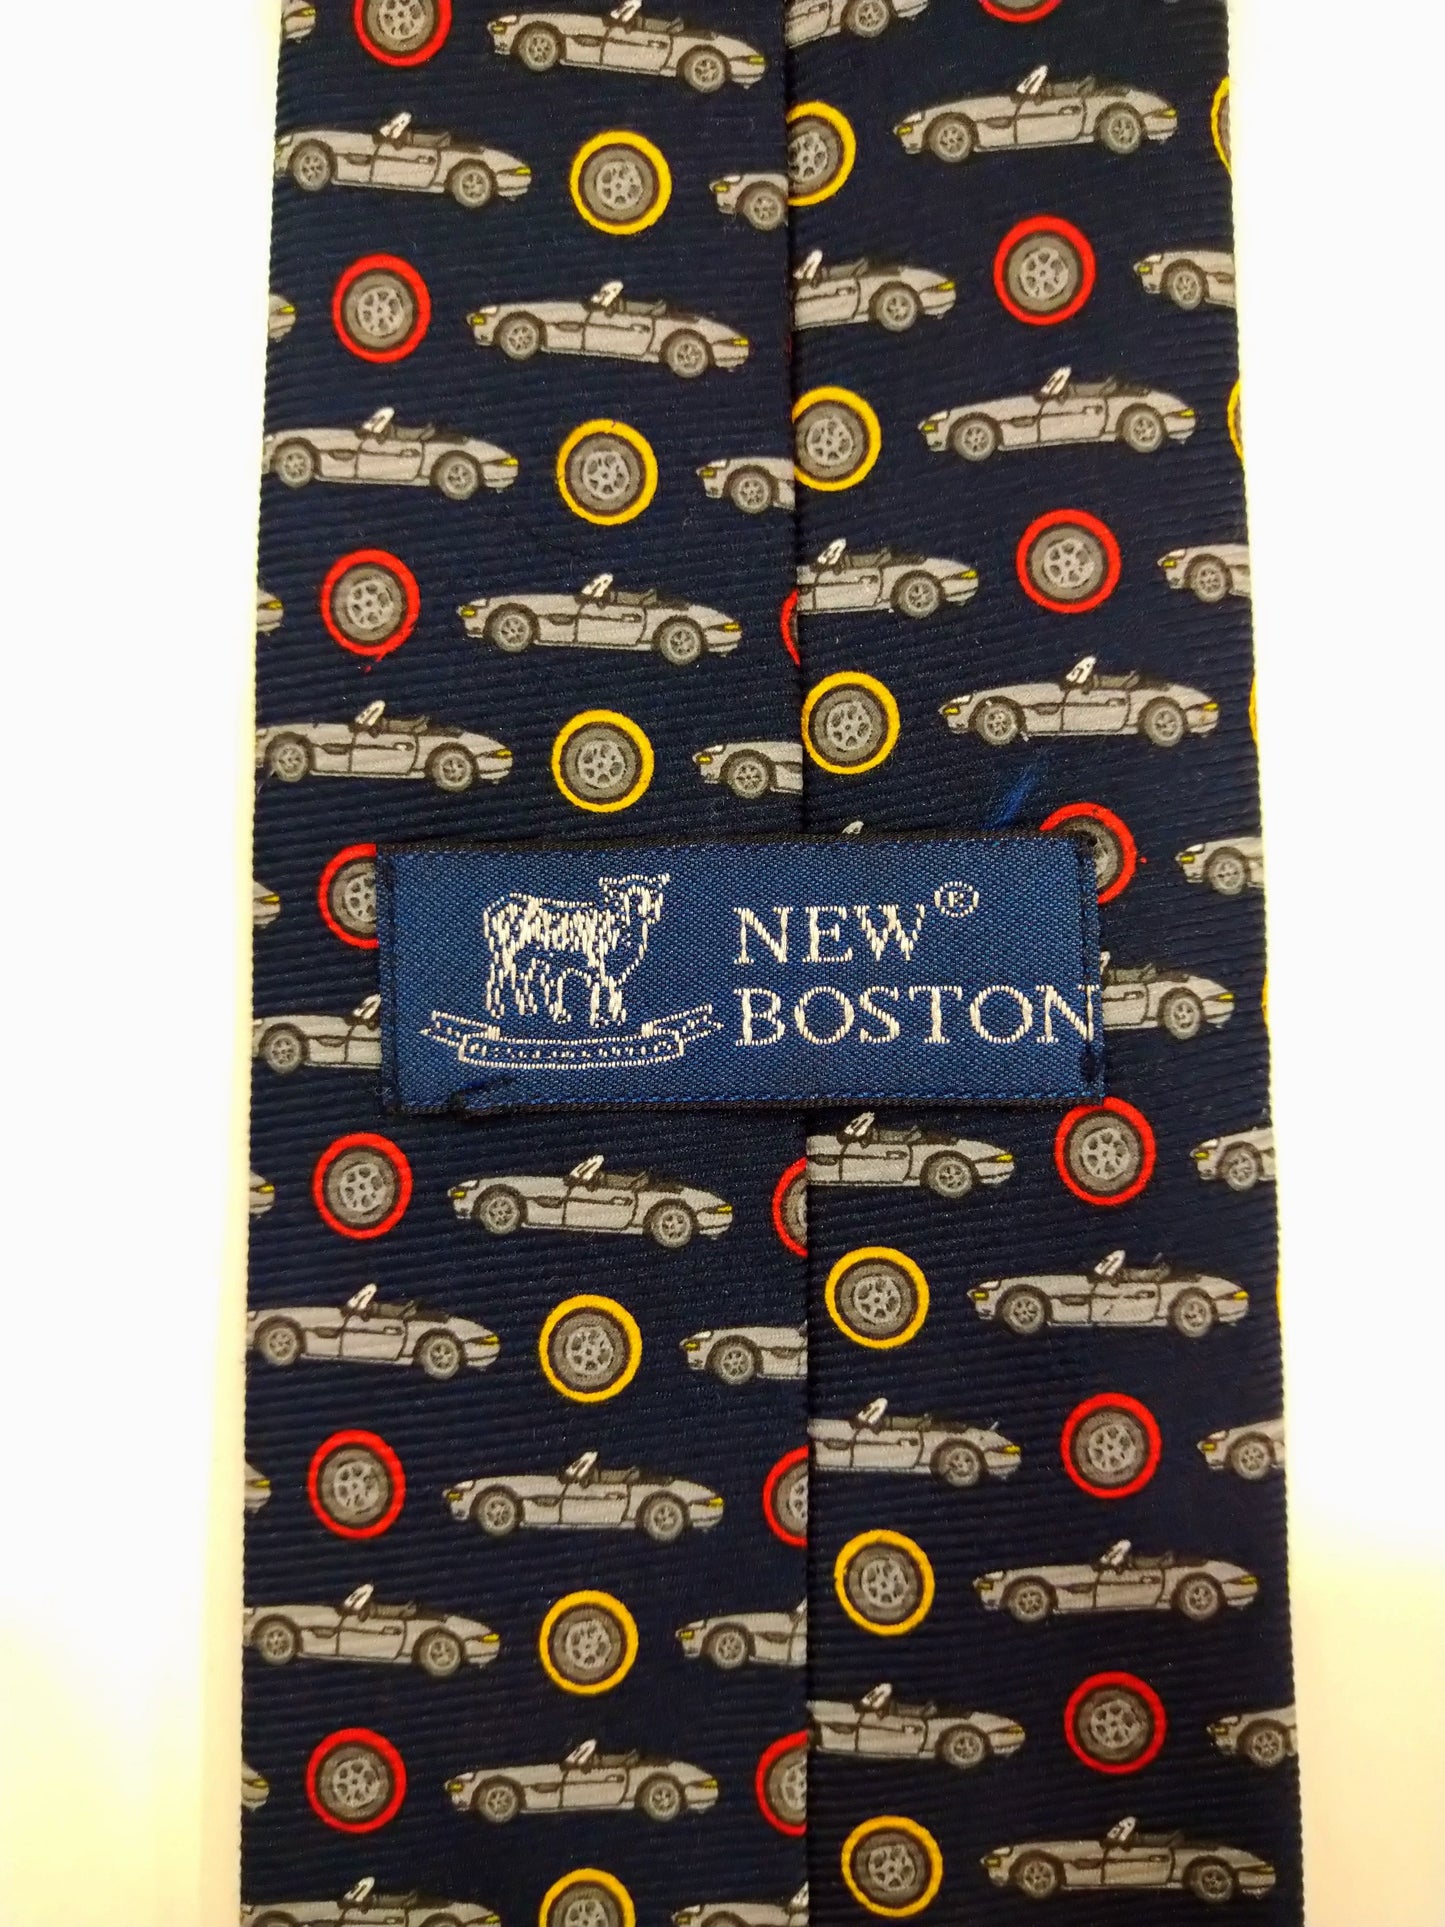 New Boston zachte polyester stropdas. Blauw met mooi oldtimer auto motief.